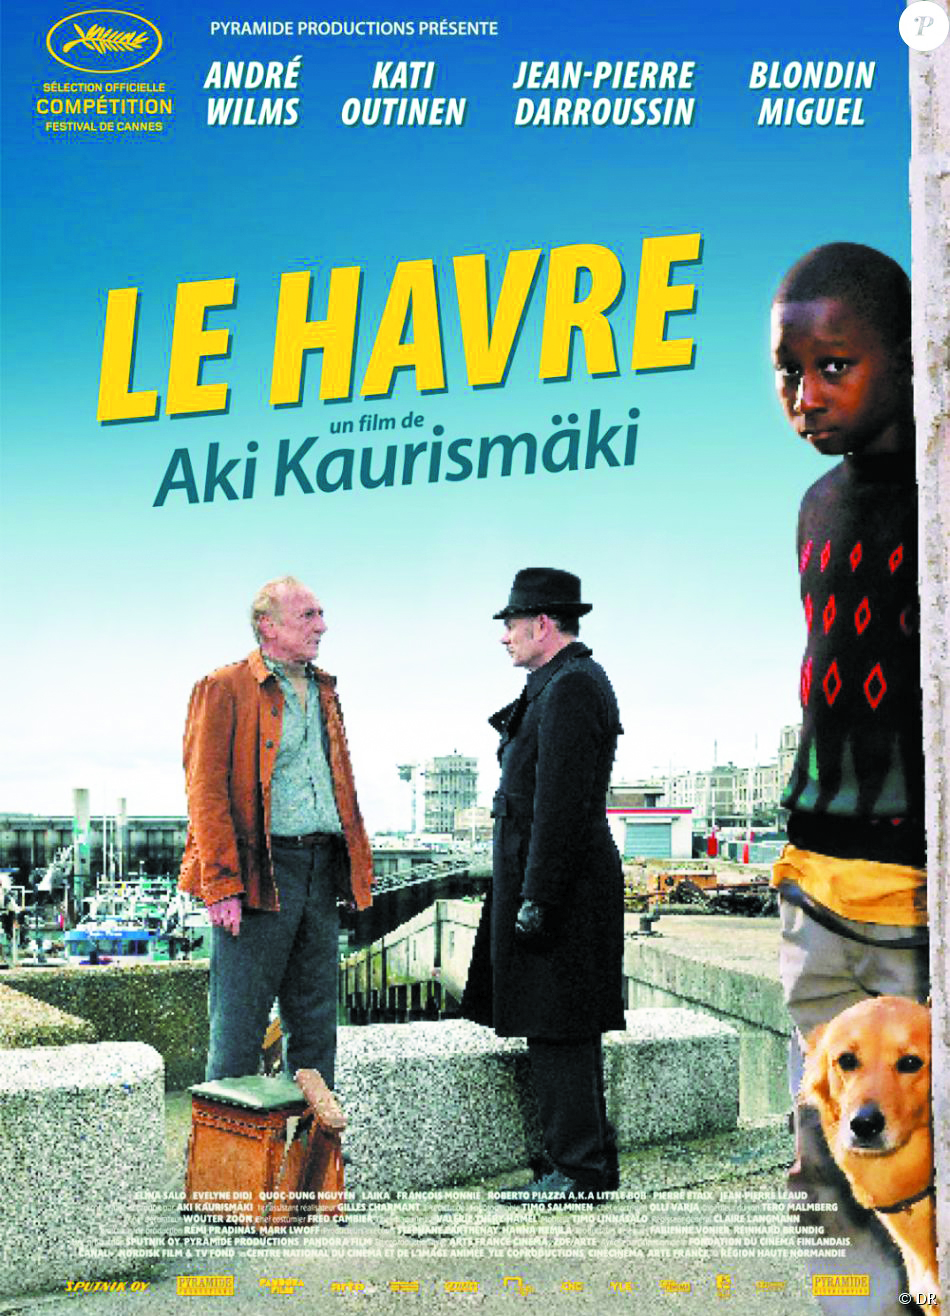 Sinè Vaghjimu.. Mardi 09 octobre 2018 à 18h00 au Cinéma l’Alba à Corte.Projection du film "Le Havre" d'Aki Kaurismäki.